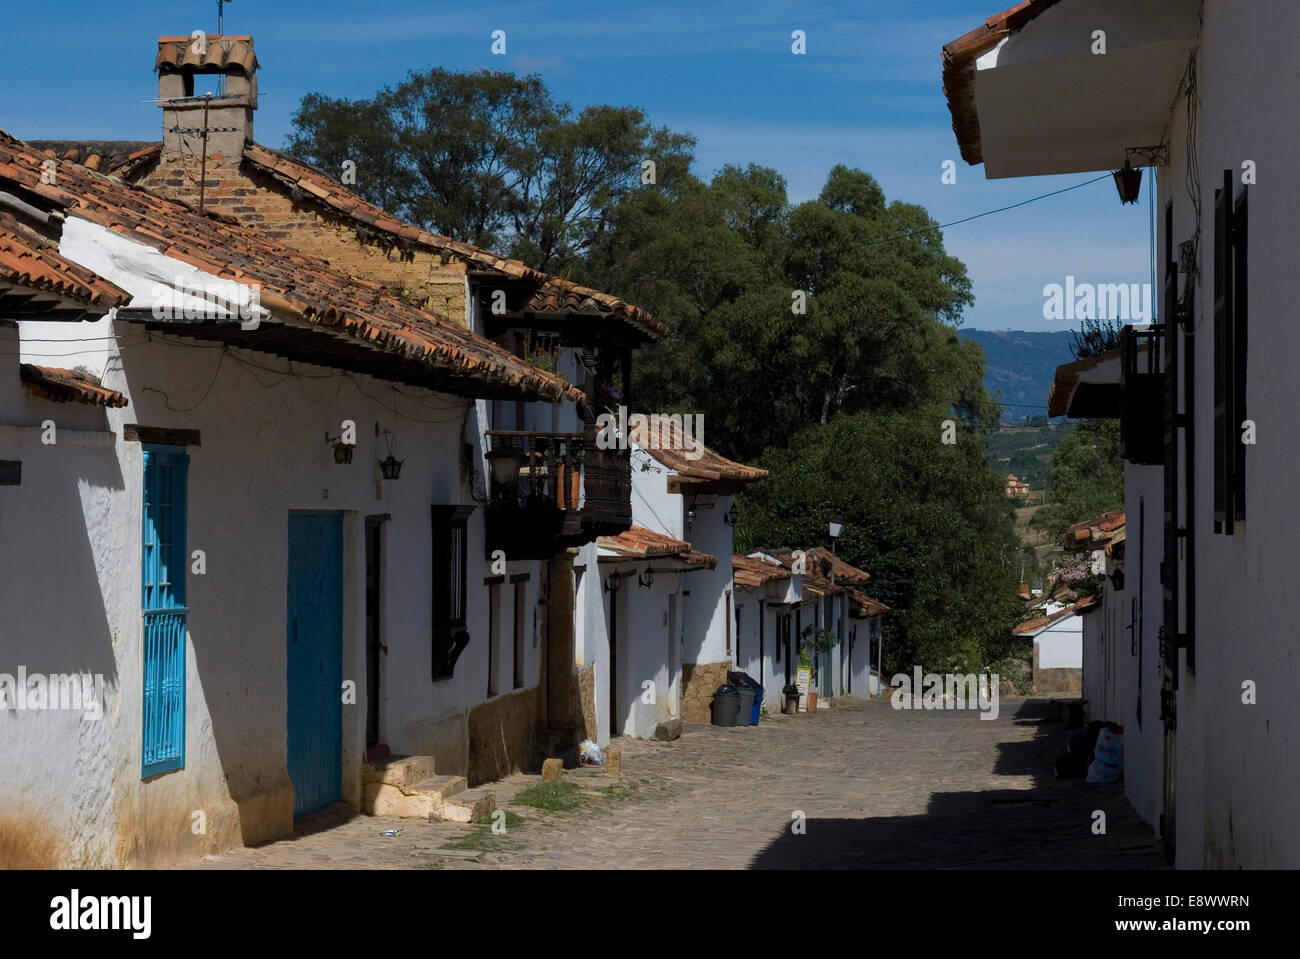 La ville coloniale de Villa de Leyva, Colombie Banque D'Images